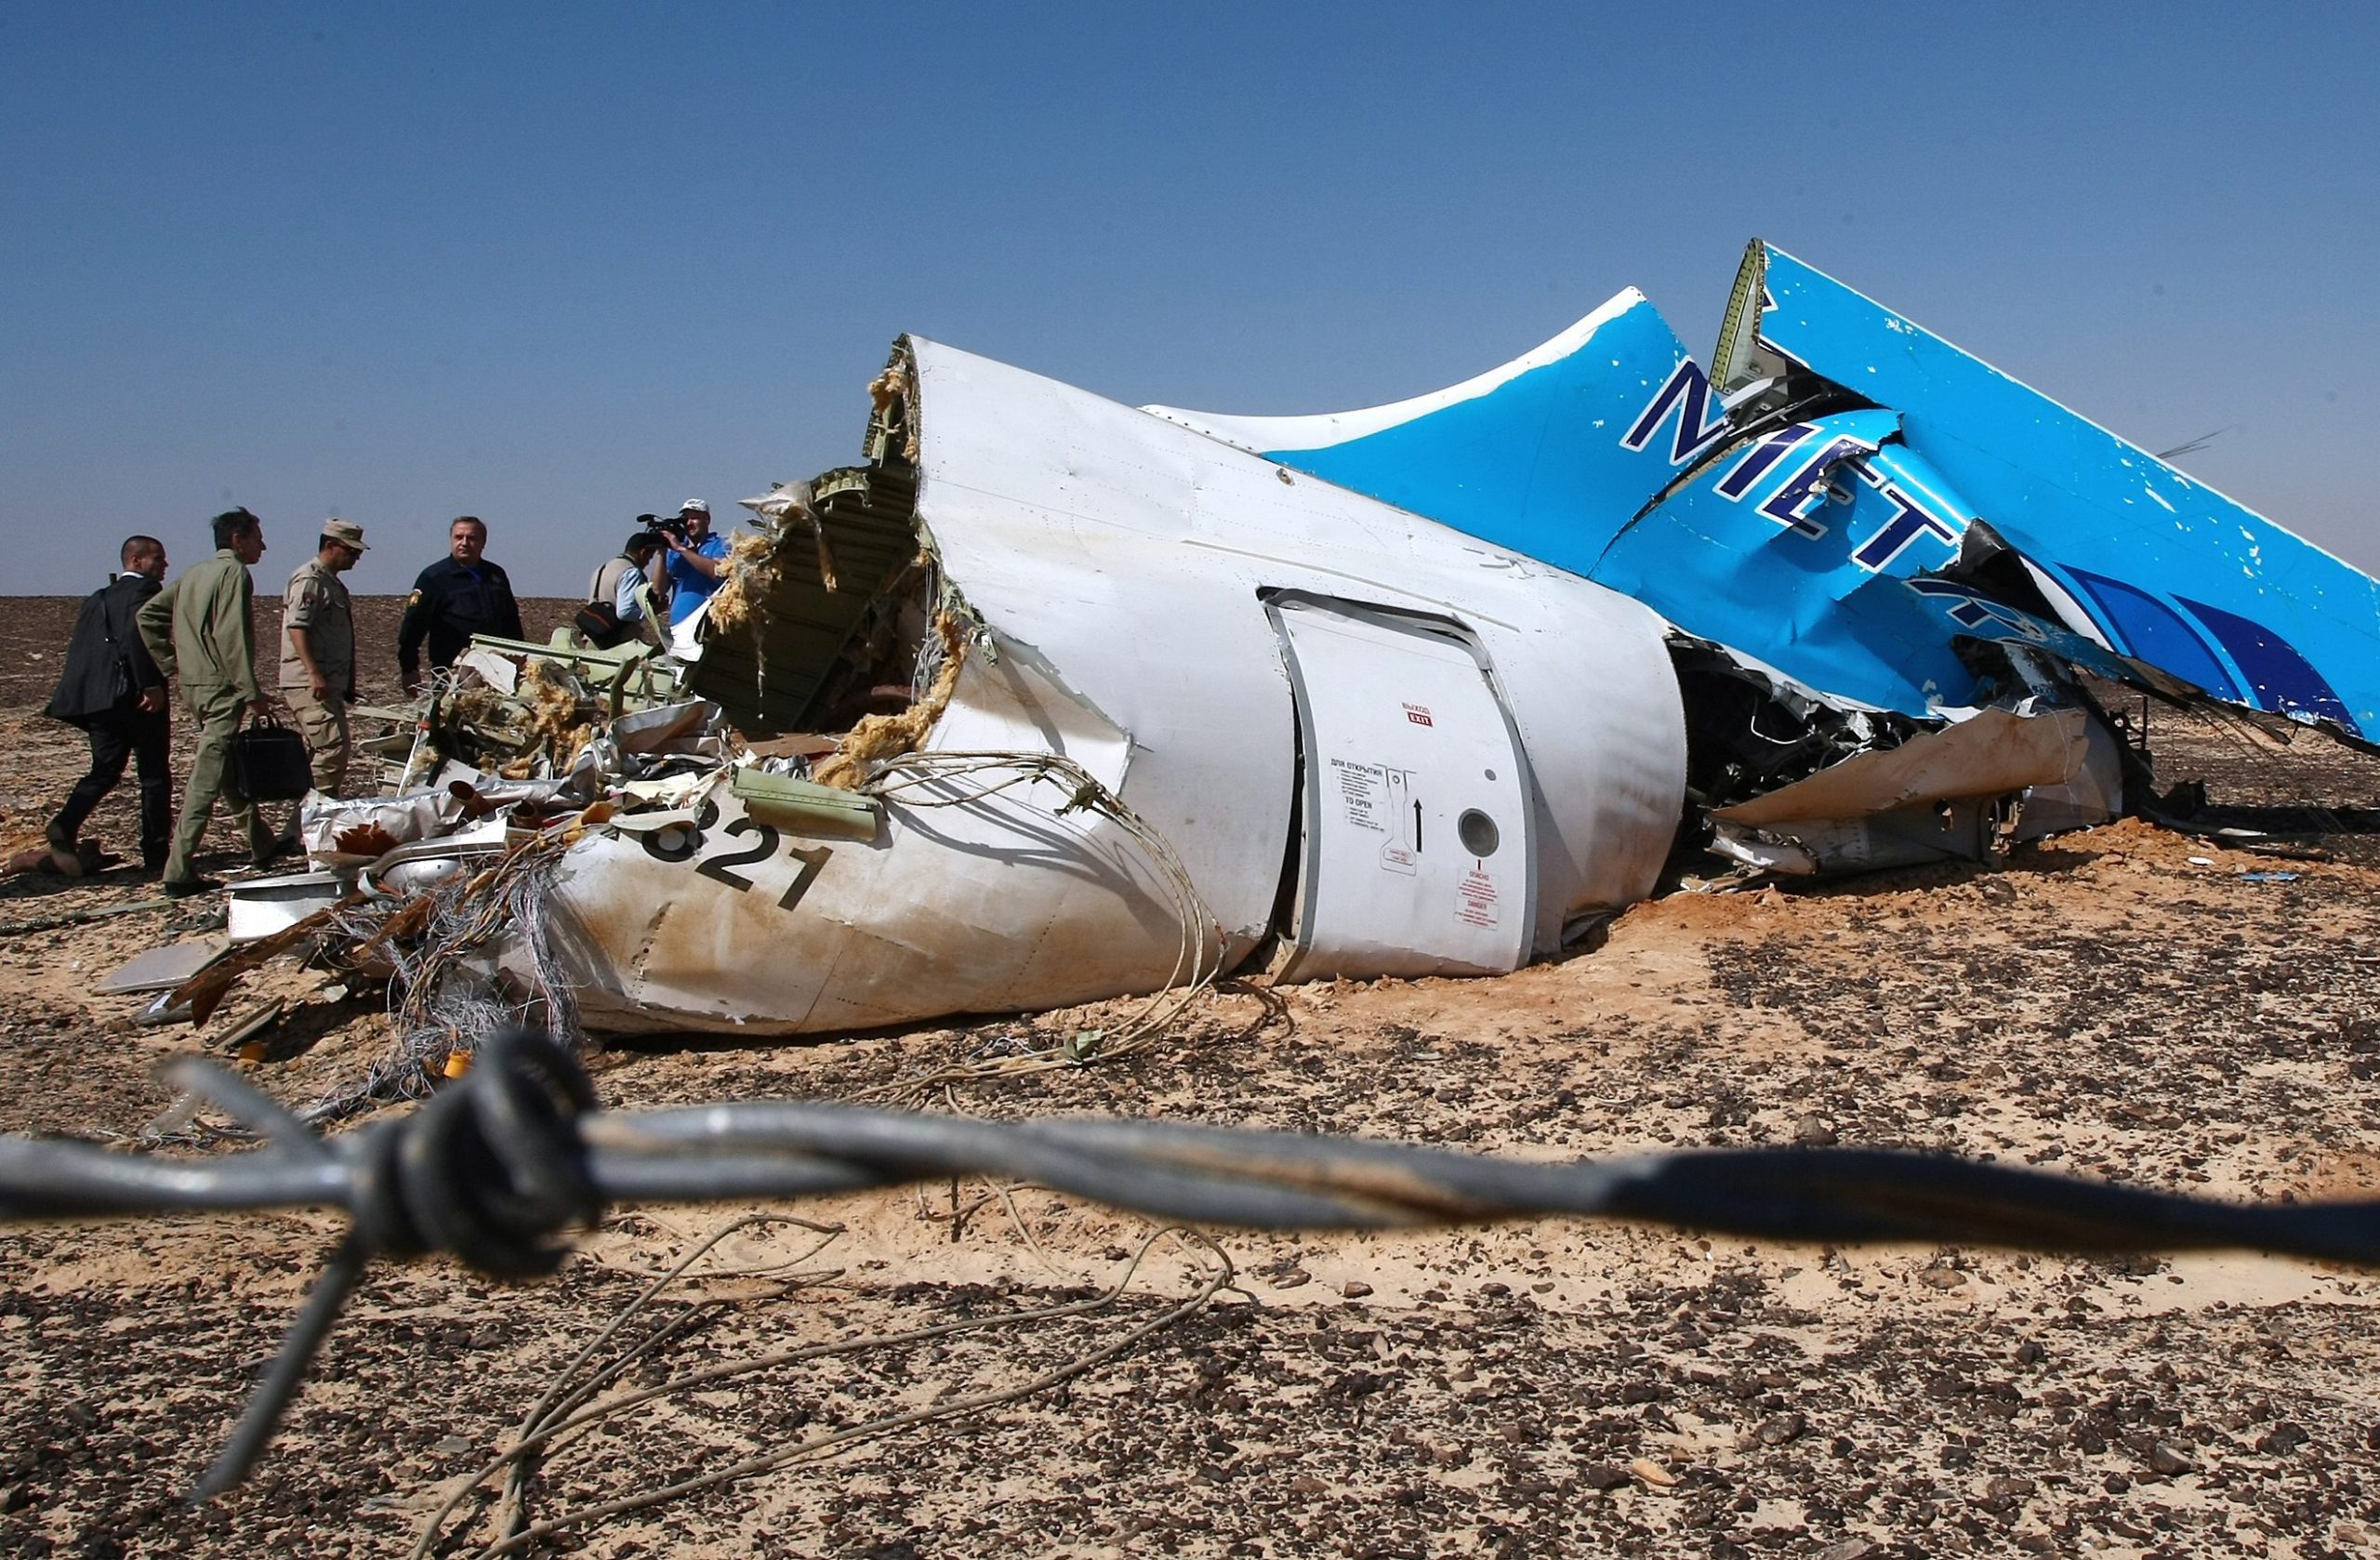 Αίγυπτος: Ακούγεται αδιευκρίνιστος θόρυβος ένα δευτερόλεπτο πριν την πτώση του αεροσκάφους